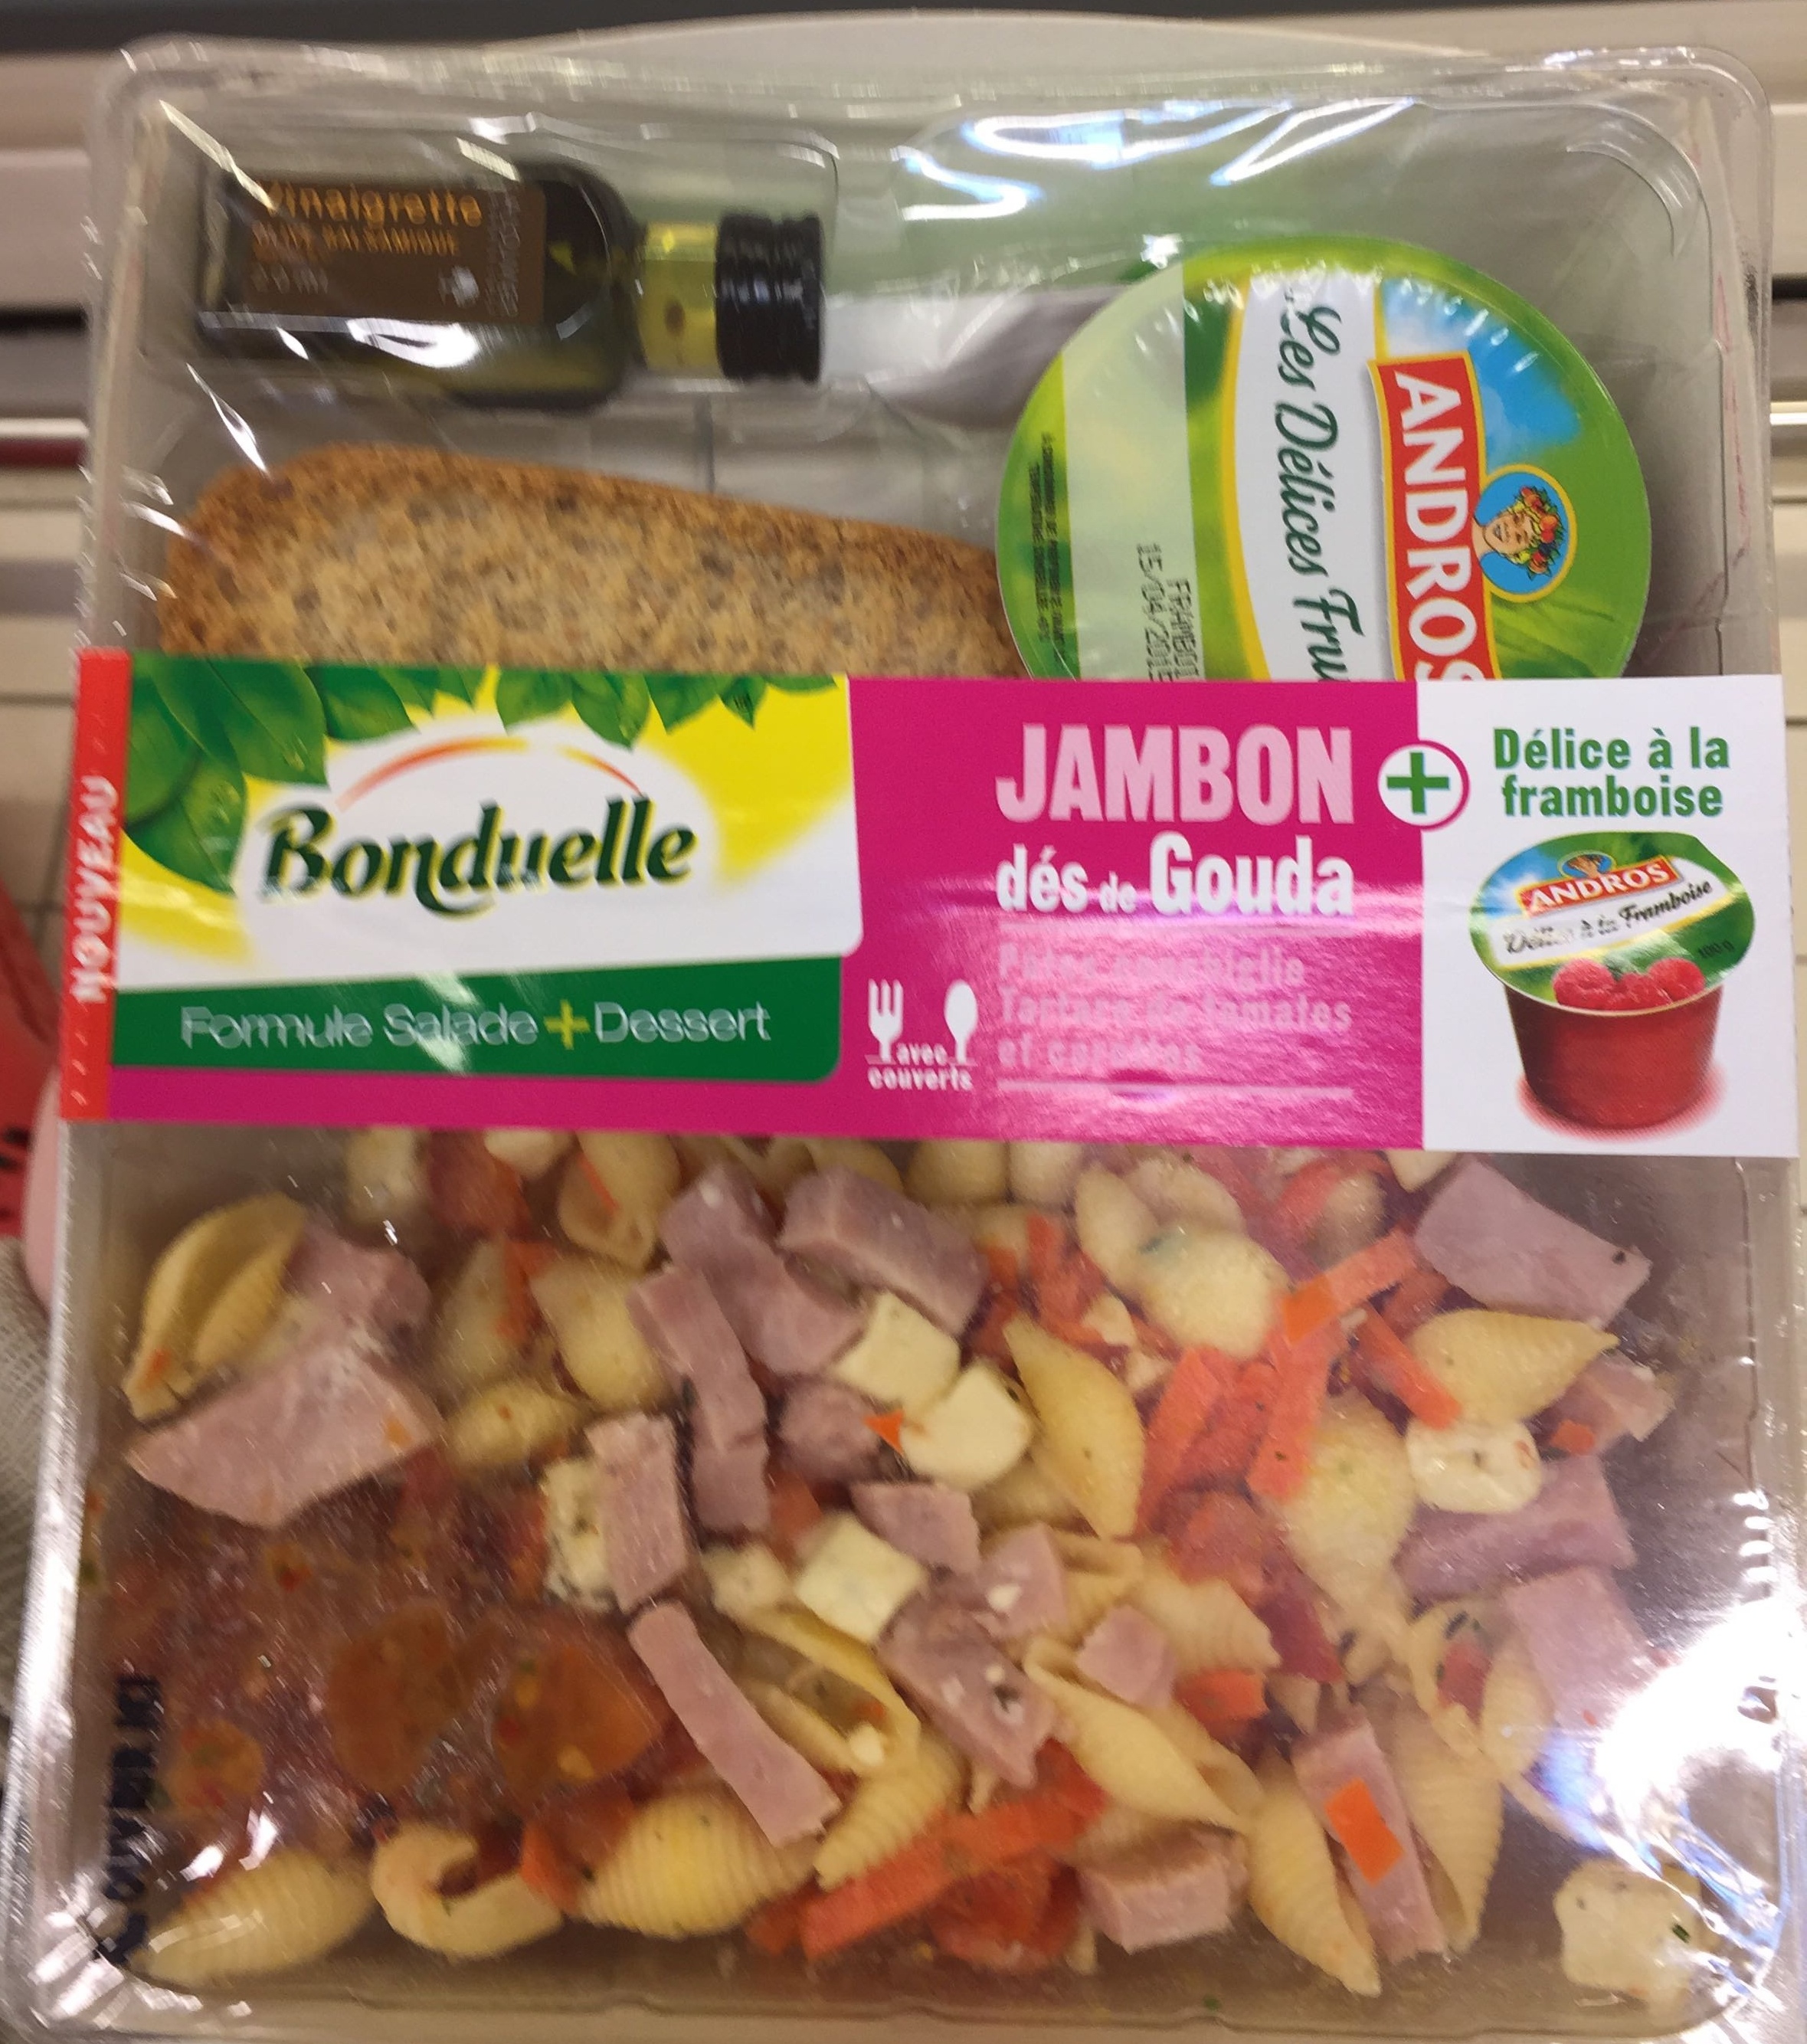 Formule Salade + Dessert Jambon dés de Gouda + Délice à la framboise - Produit